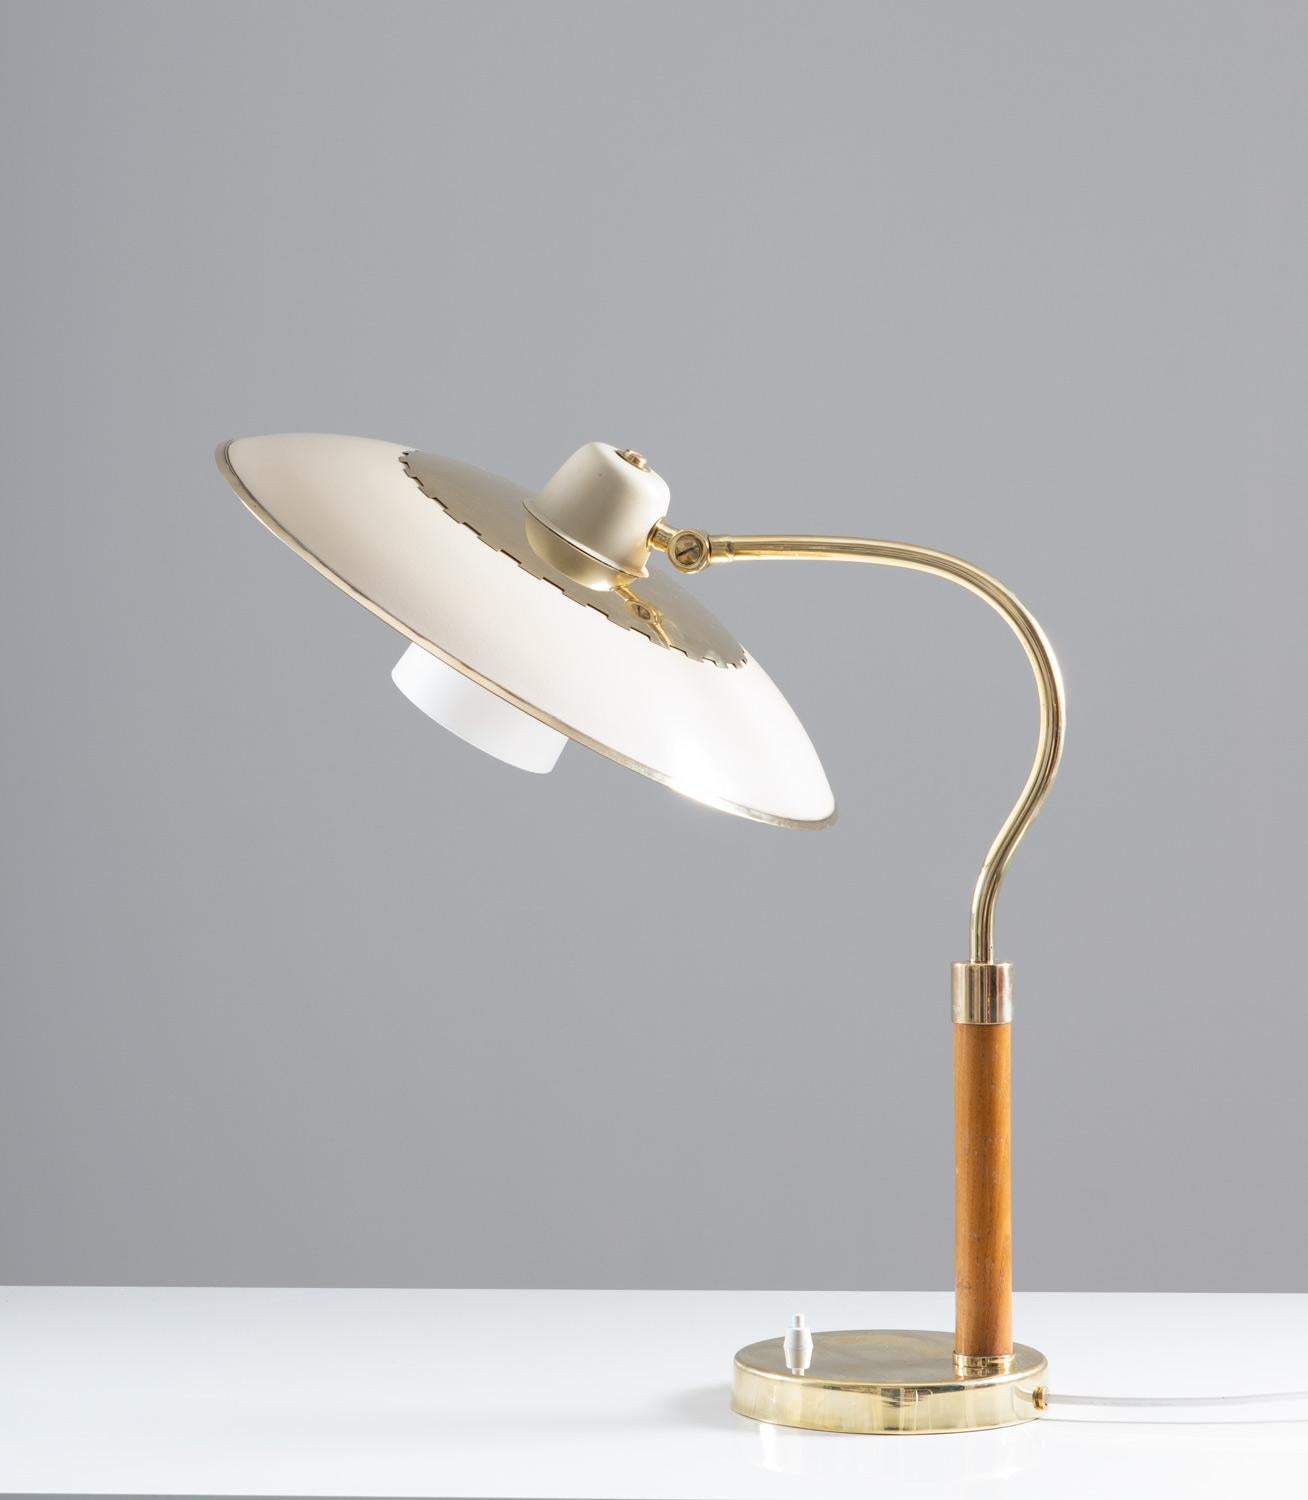 Lampe de table suédoise moderne du milieu du siècle en laiton, verre et bois, produite par Boréns, années 1940.
La lampe se compose d'un grand abat-jour peint en blanc, décoré de détails en laiton poli. L'ampoule est entourée d'un second abat-jour